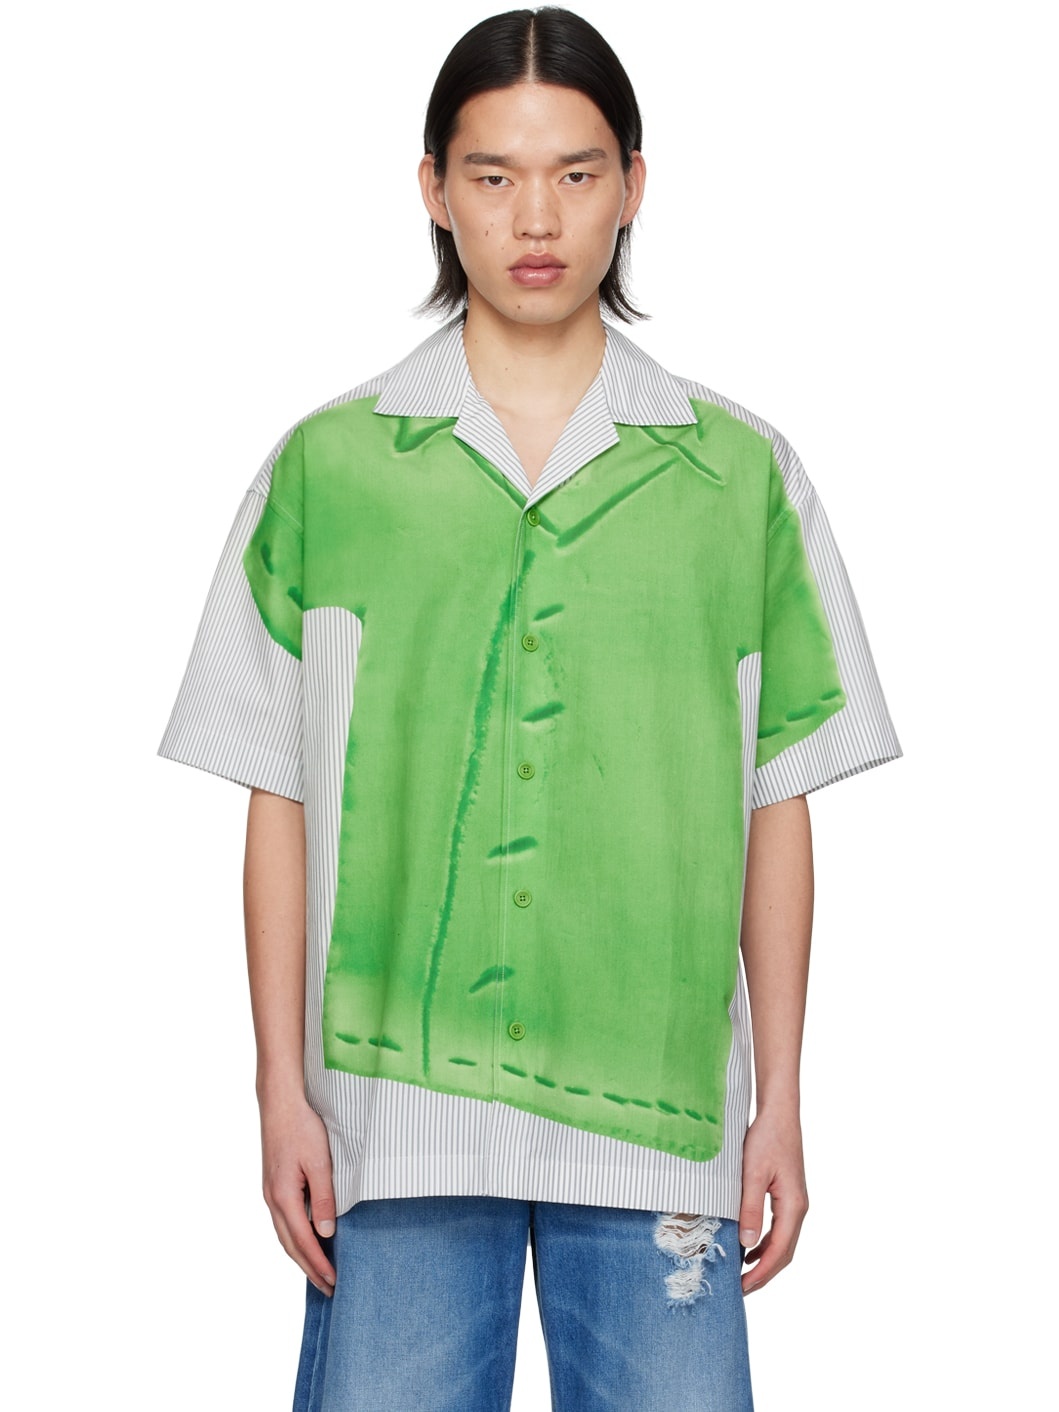 Green & Grey Printed Shirt - 1